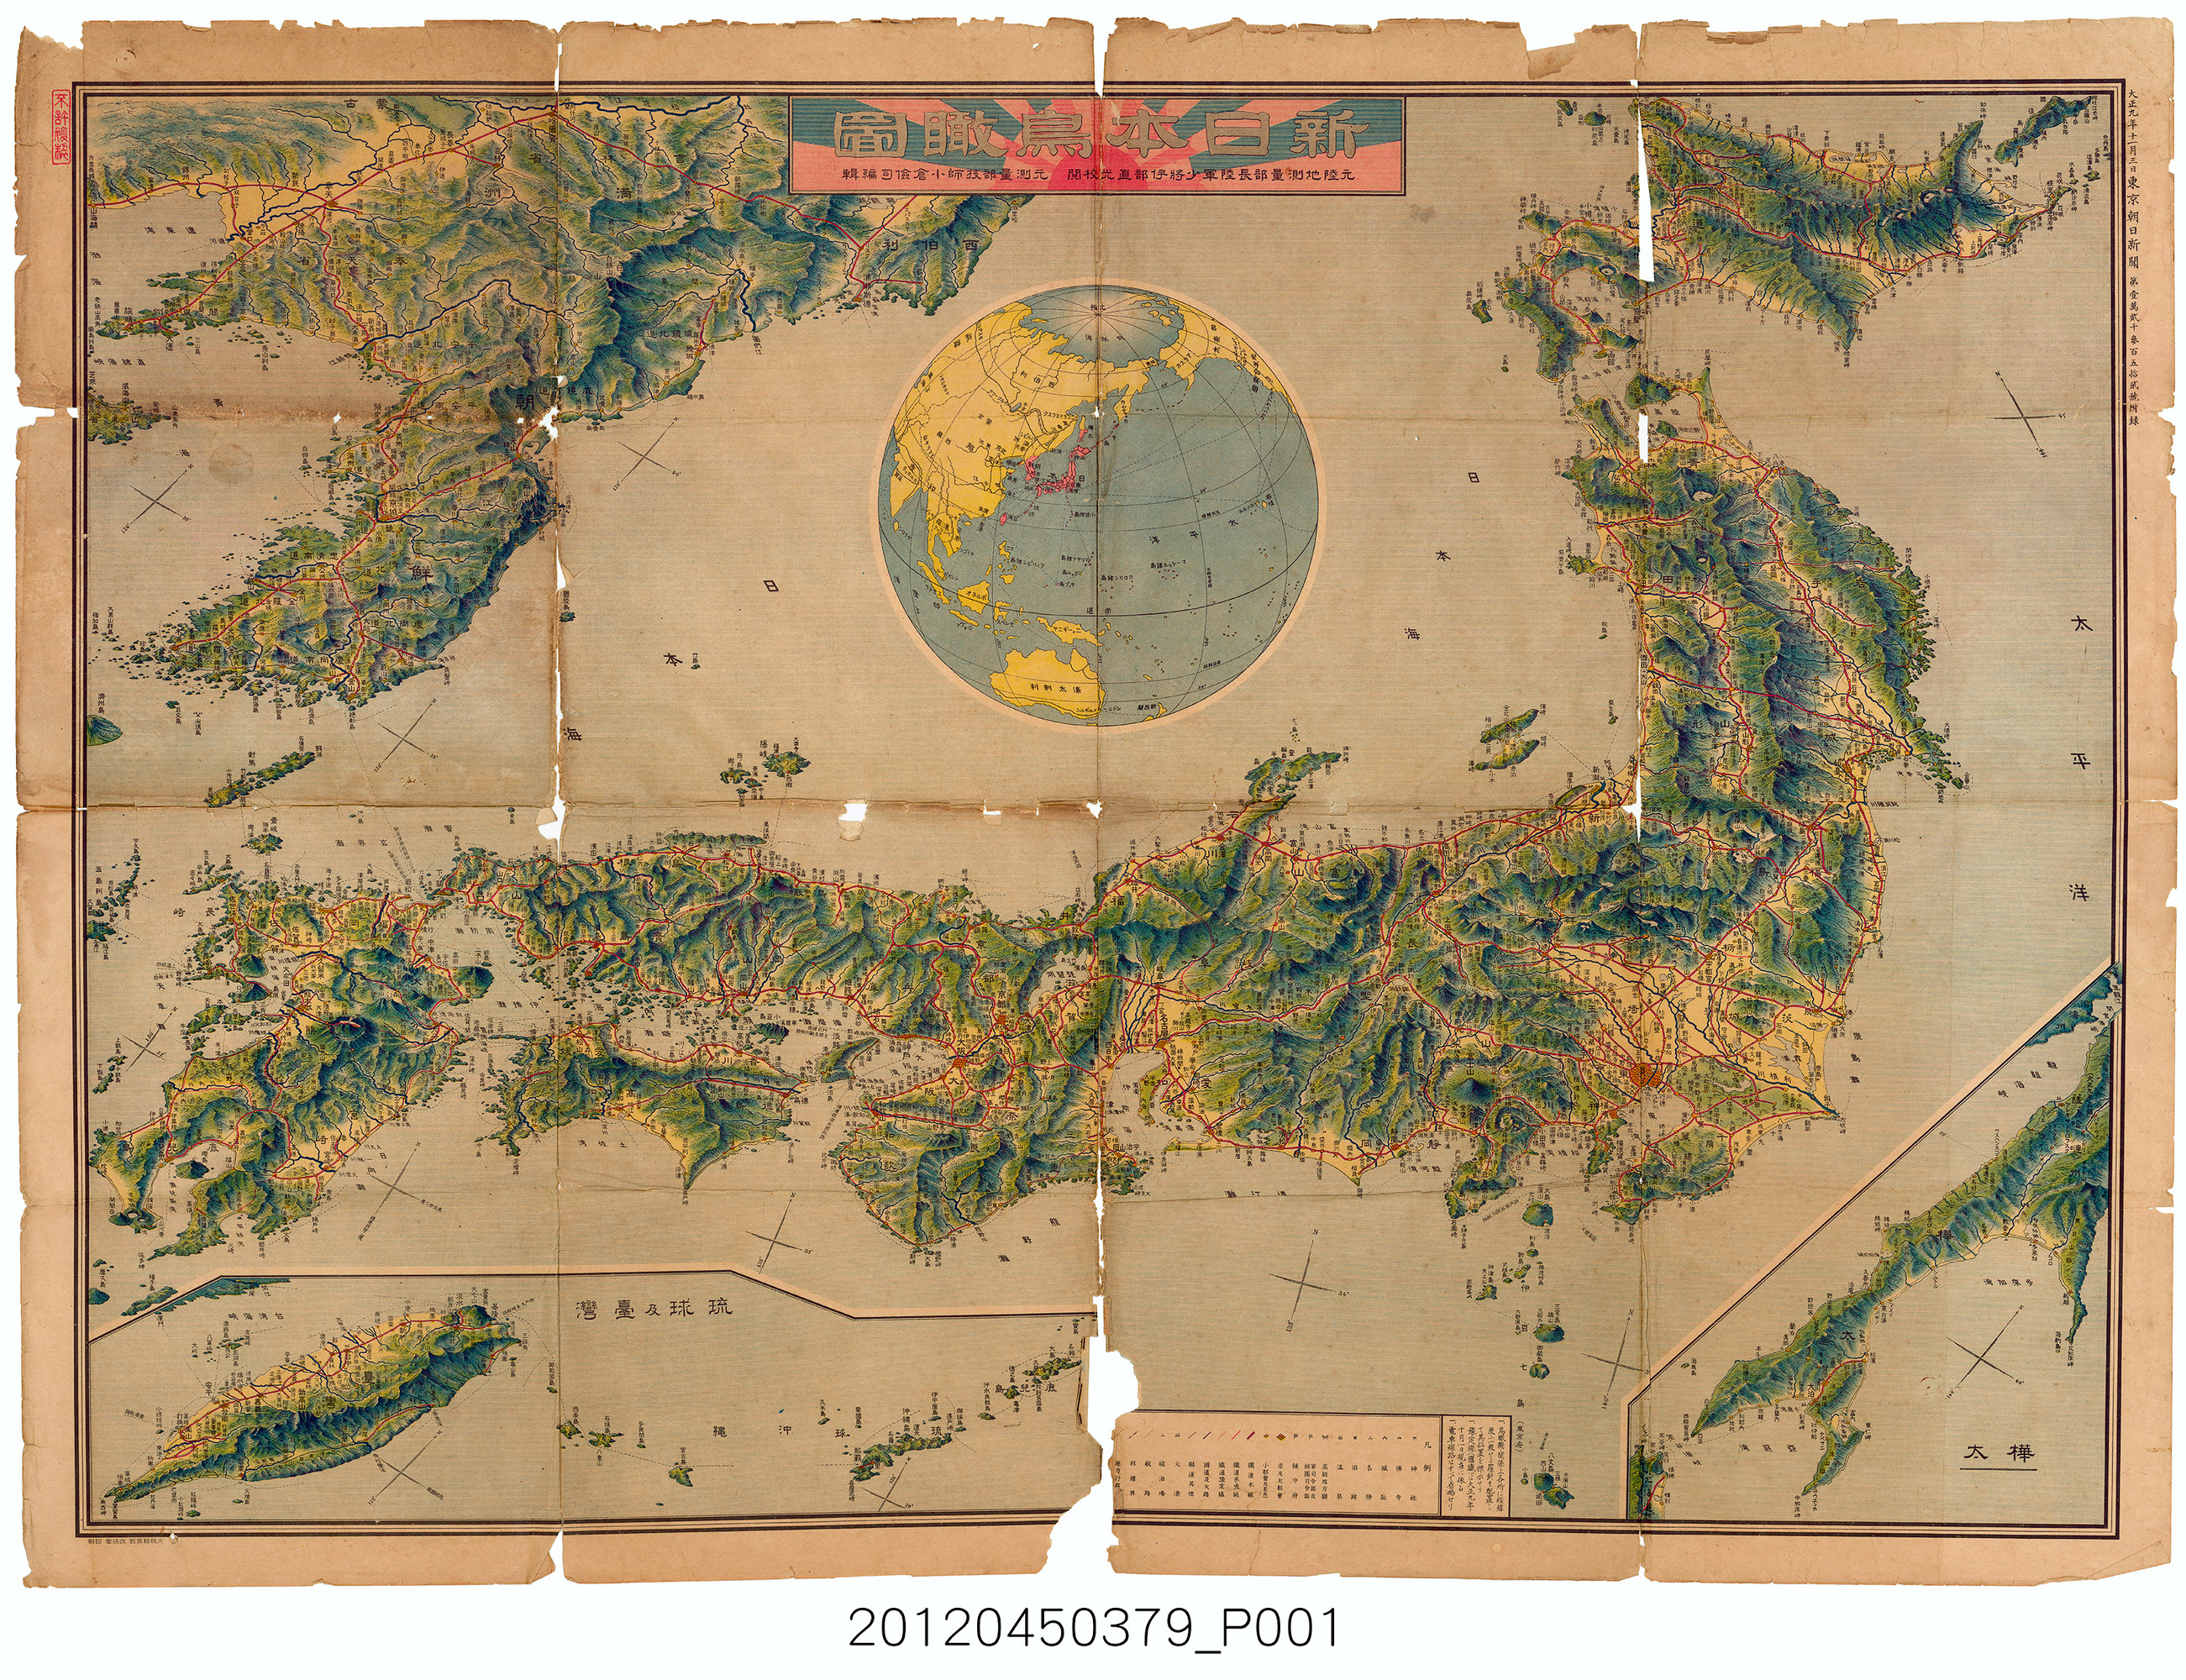 東京朝日新聞社〈新日本鳥瞰圖〉 | 開放博物館